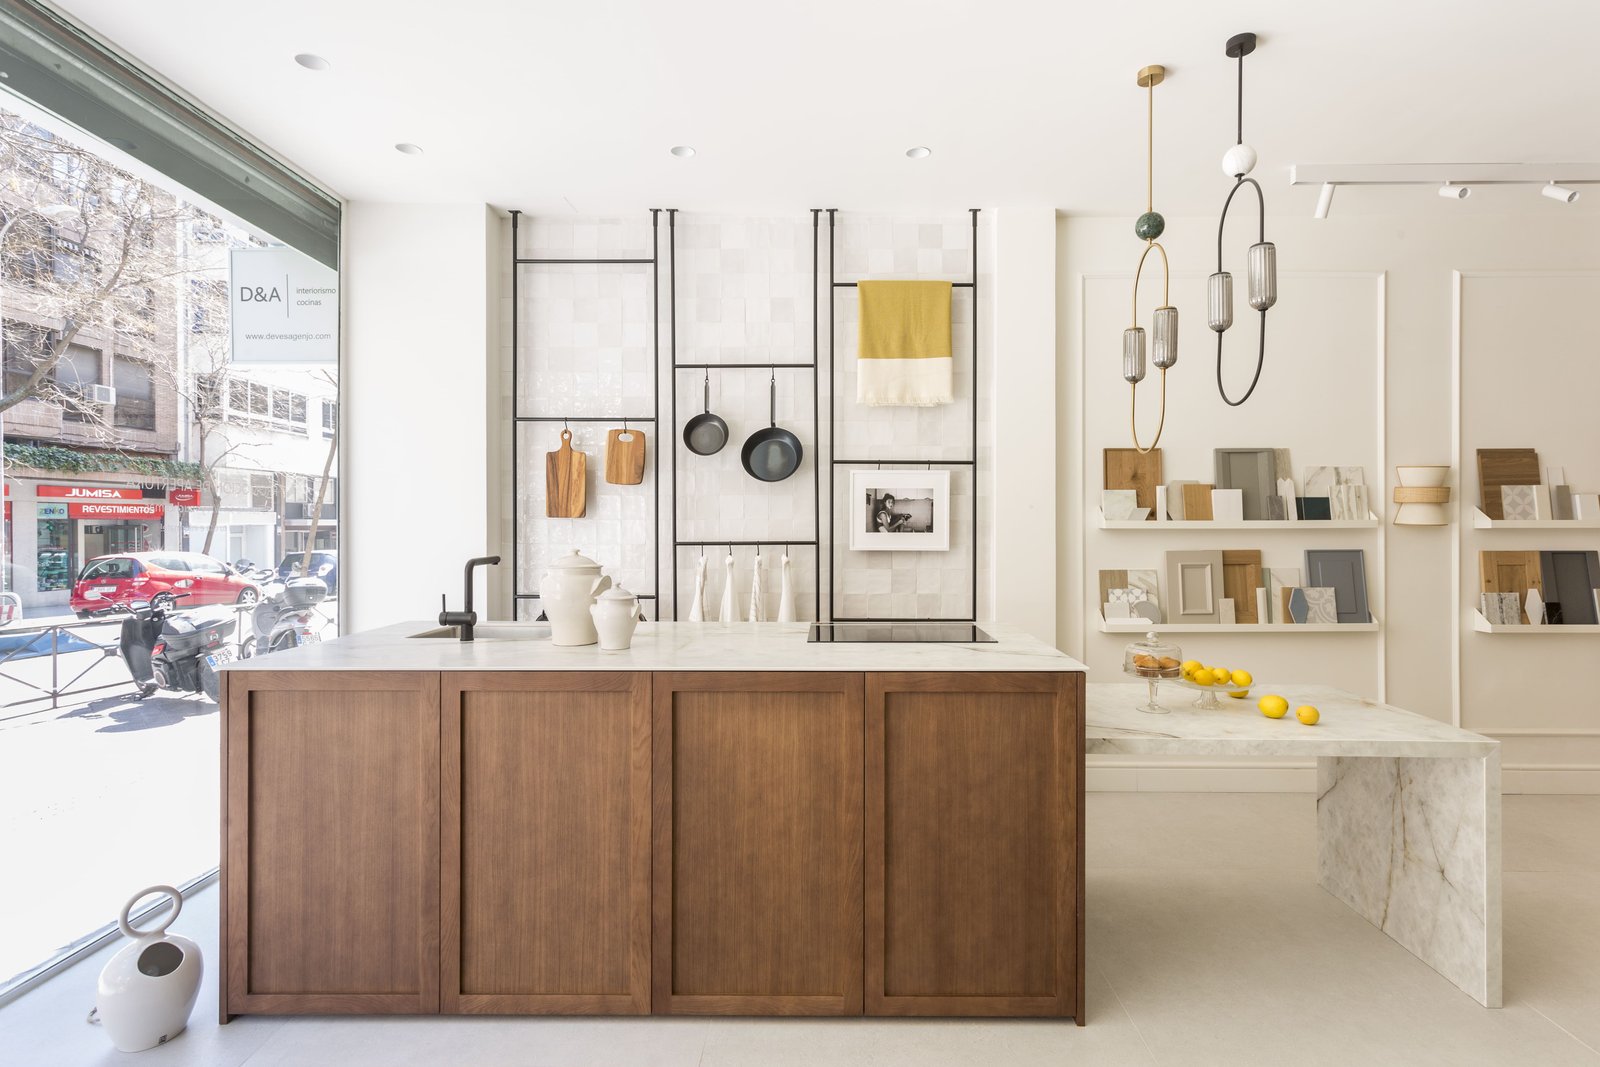 Descubre nuestro showroom de interiorismo y encuentra la inspiración que necesitas para transformar tu hogar.